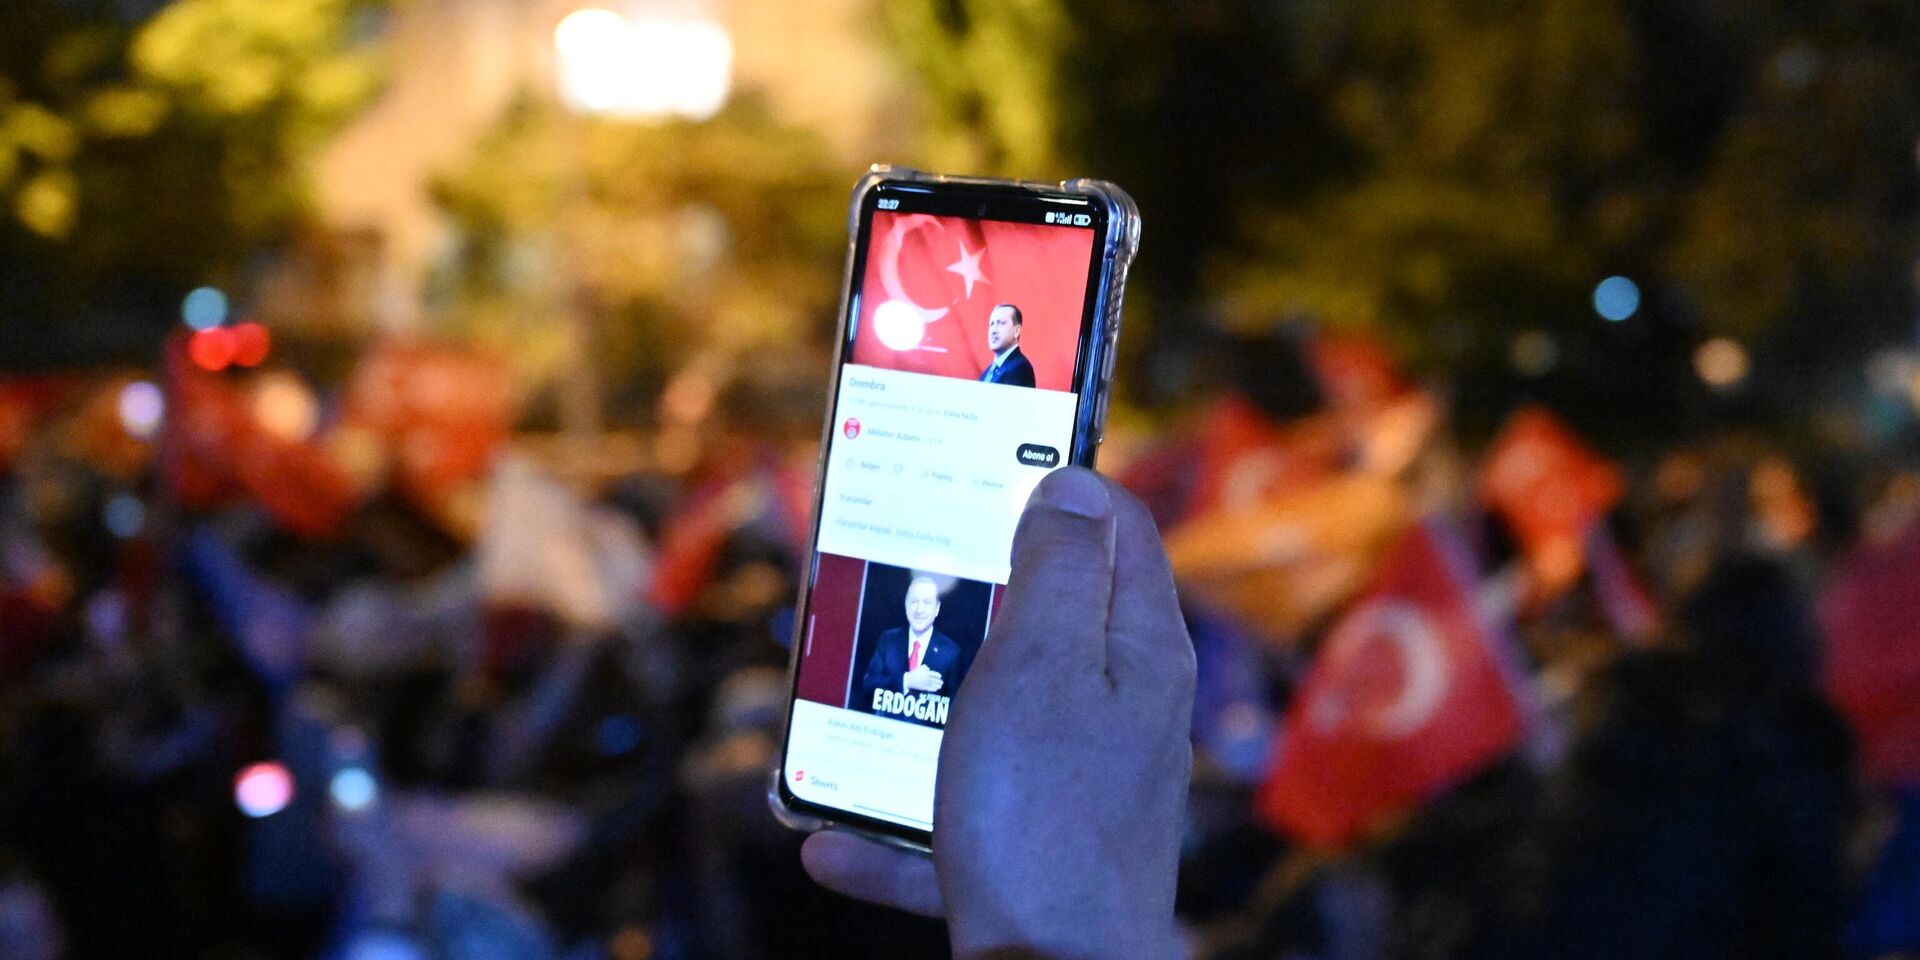 28 05 23. Митинг победа Эрдогана. Протесты в Турции 2023. Турки митинг. Реджеп Тайип Эрдоган флаг Турции.